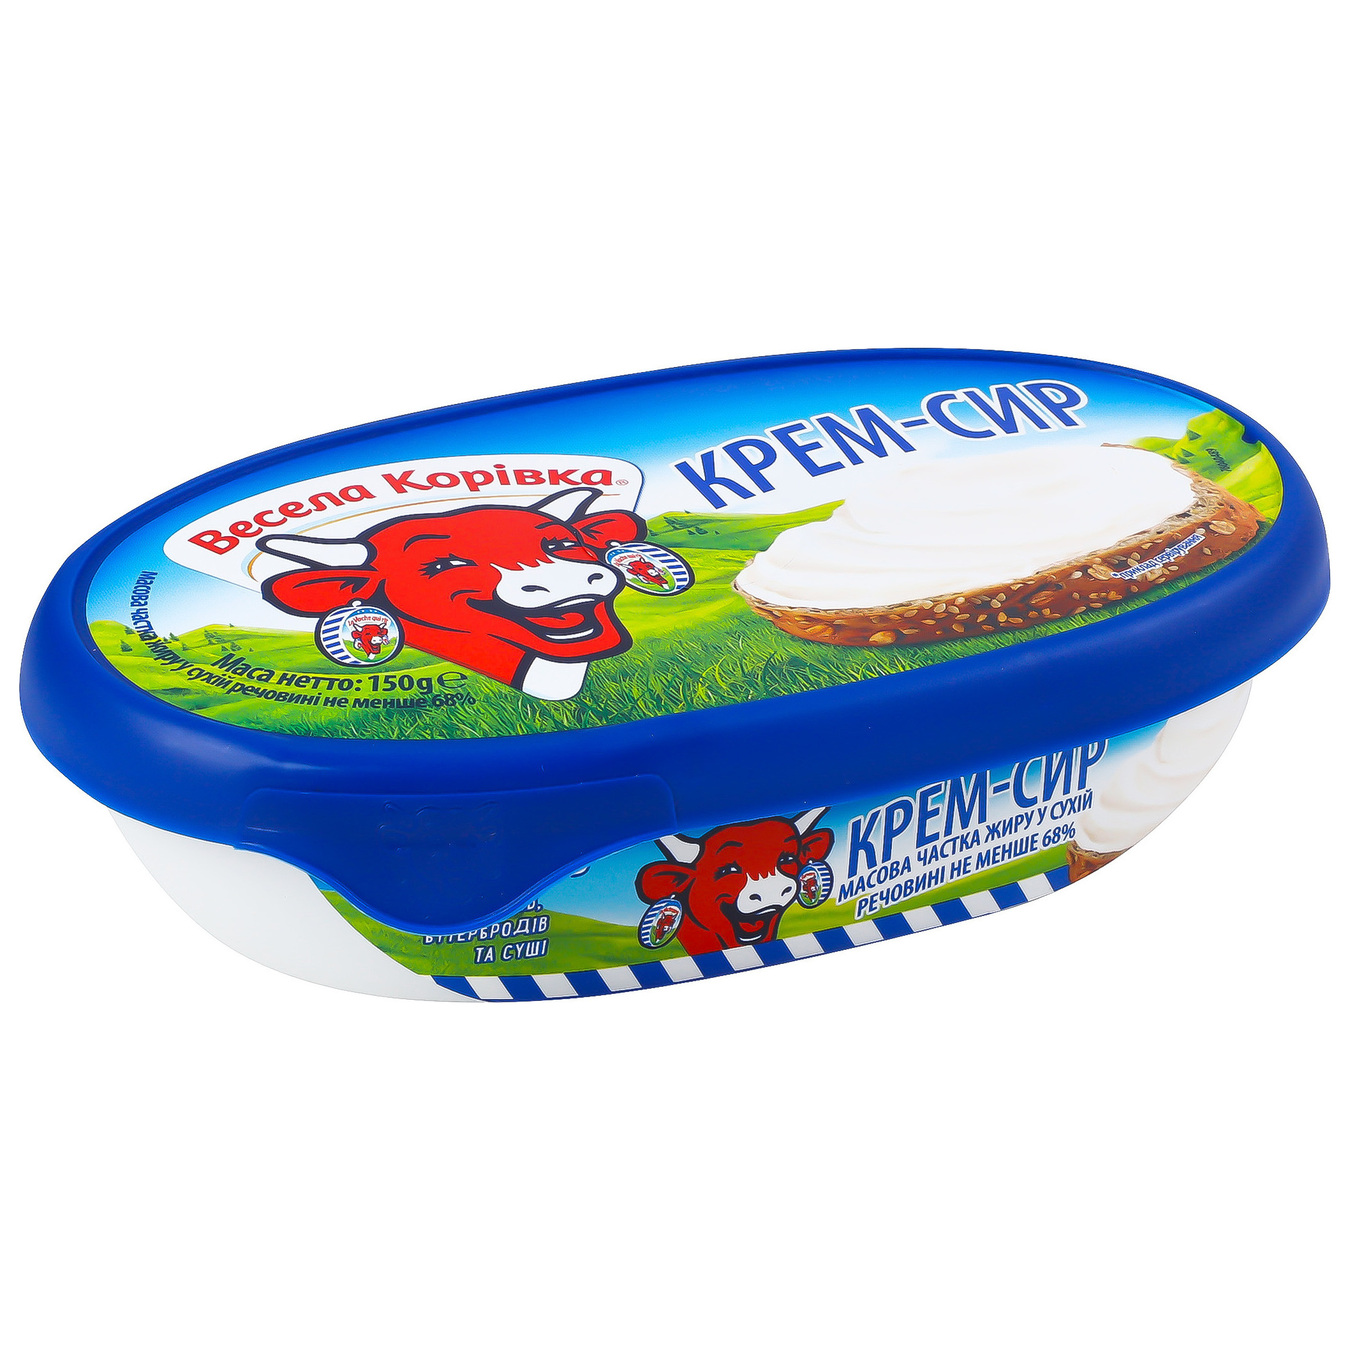 Vesela Korivka Cream Cheese 68% 150g 3